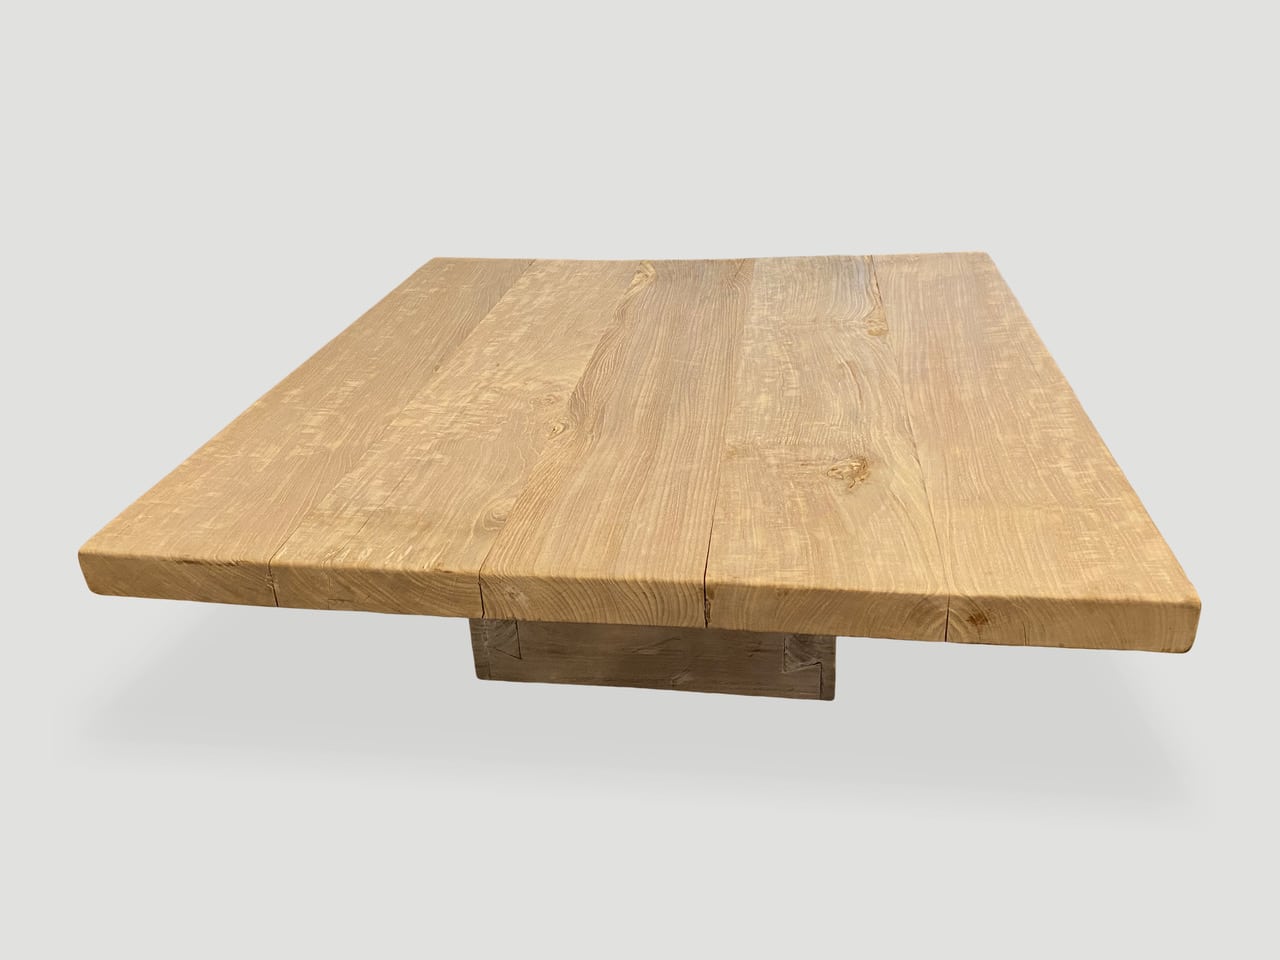 st barts teak wood coffee table